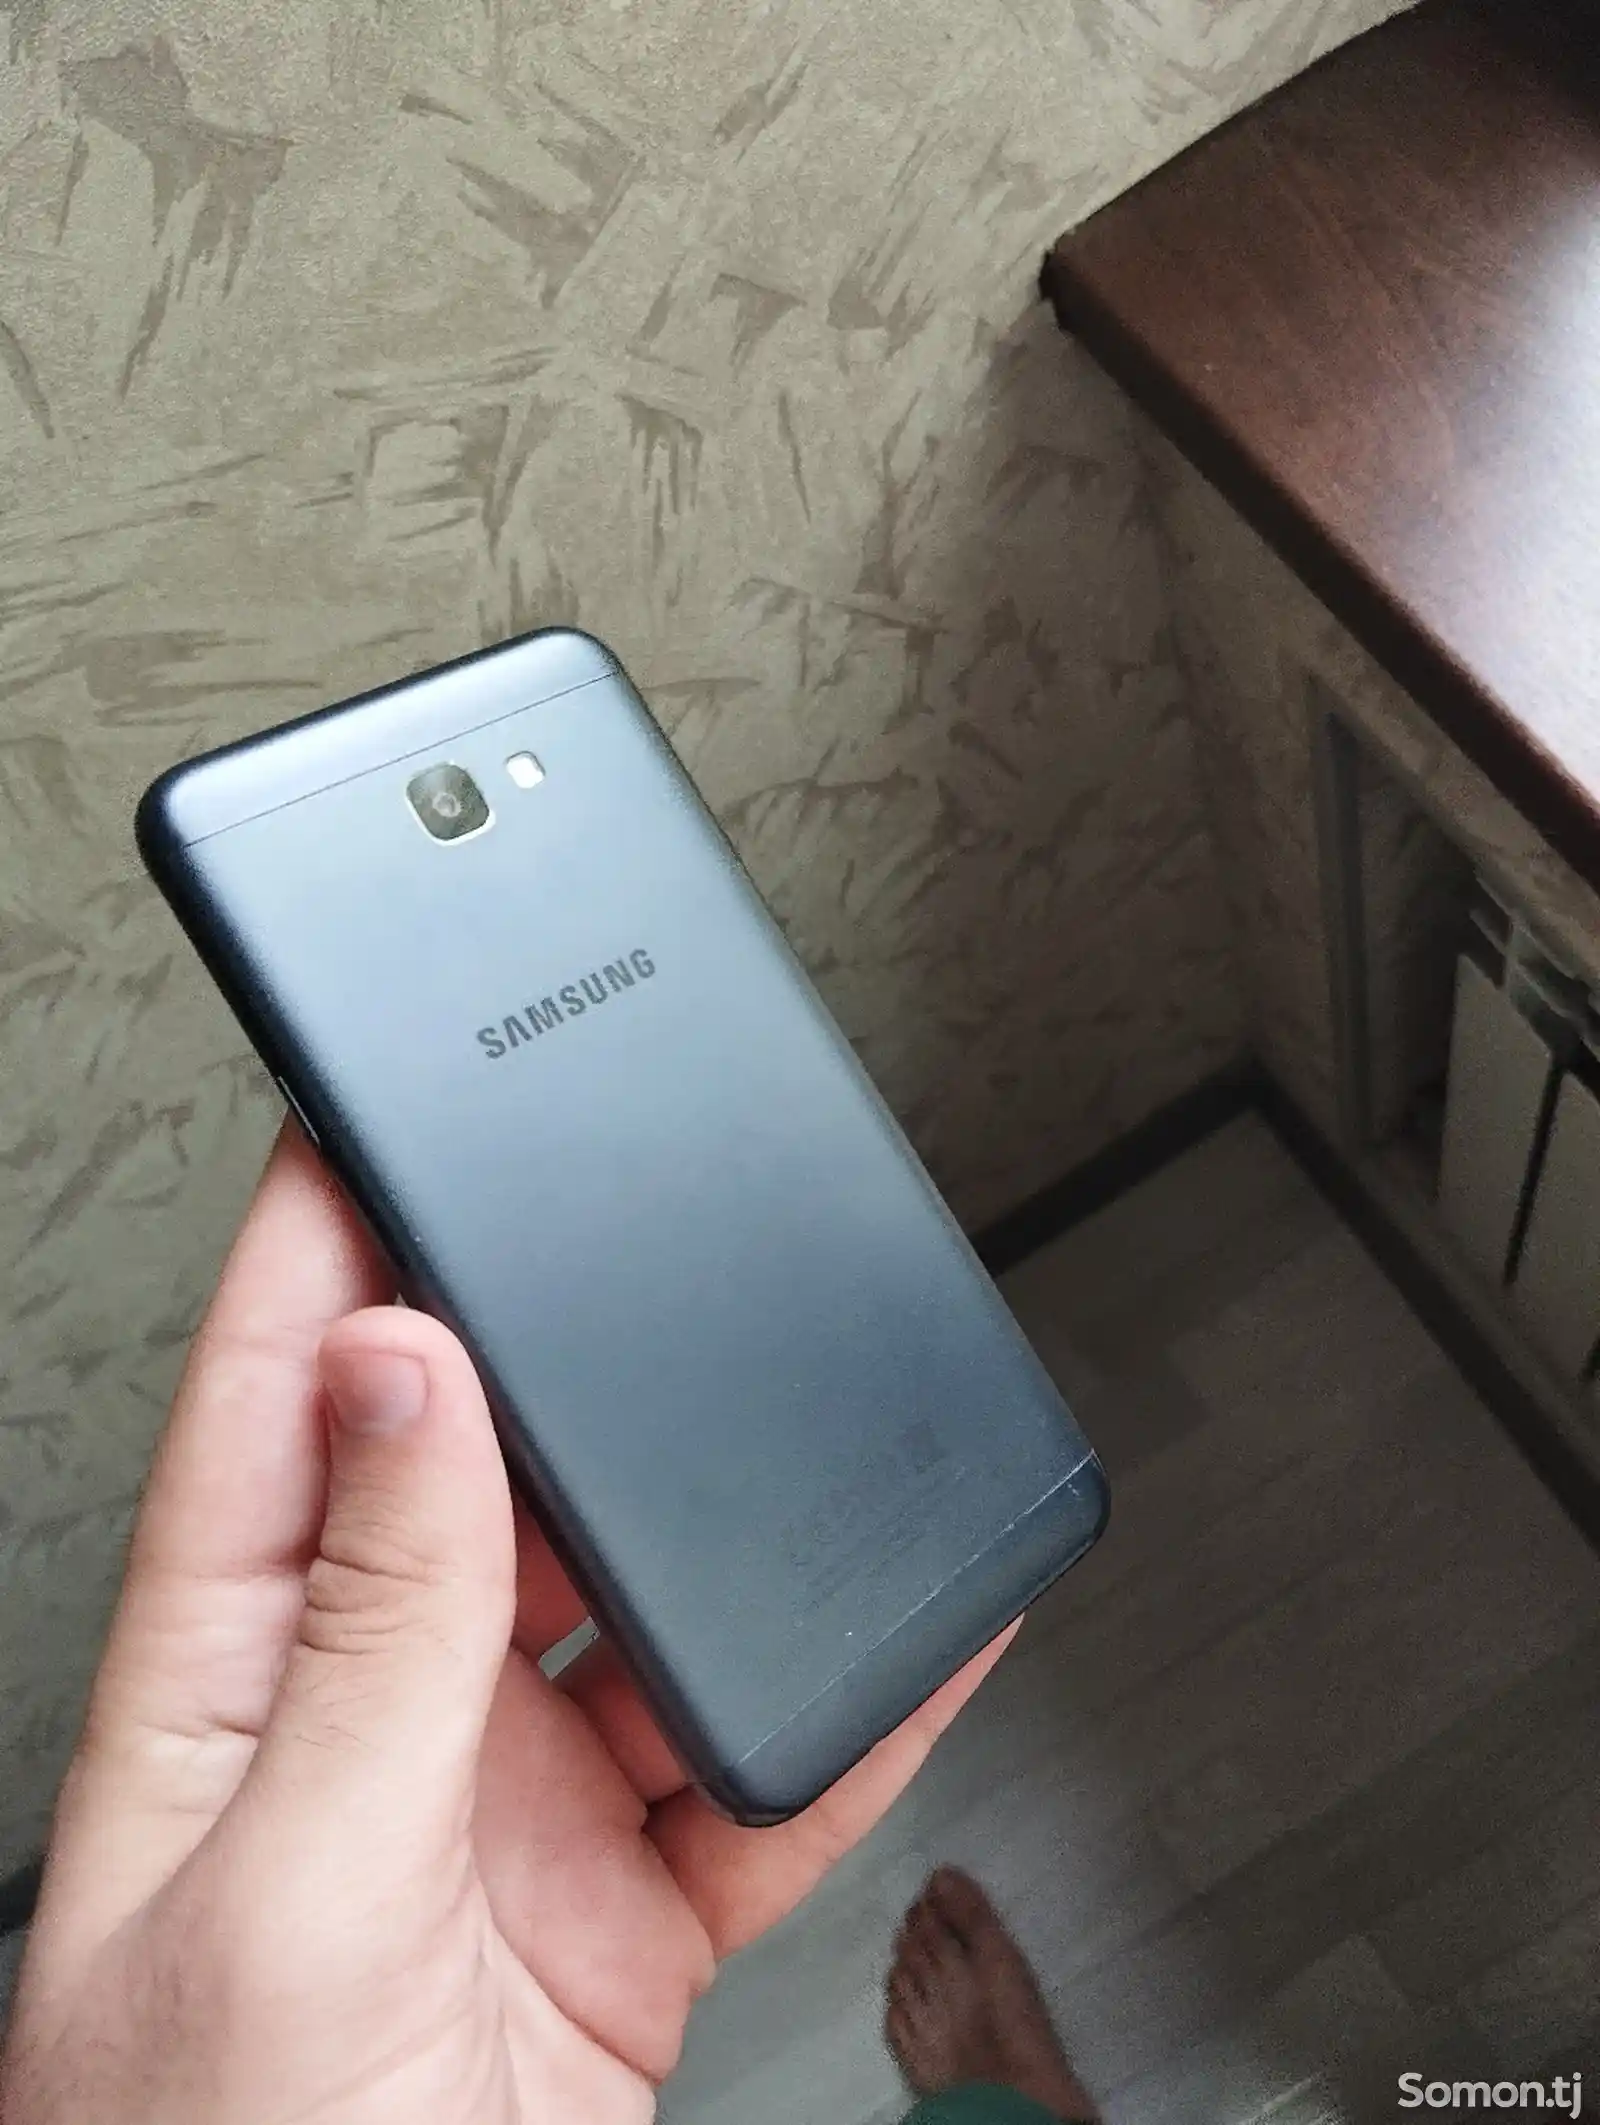 Samsung Galaxy J5 prime Vietnam-5